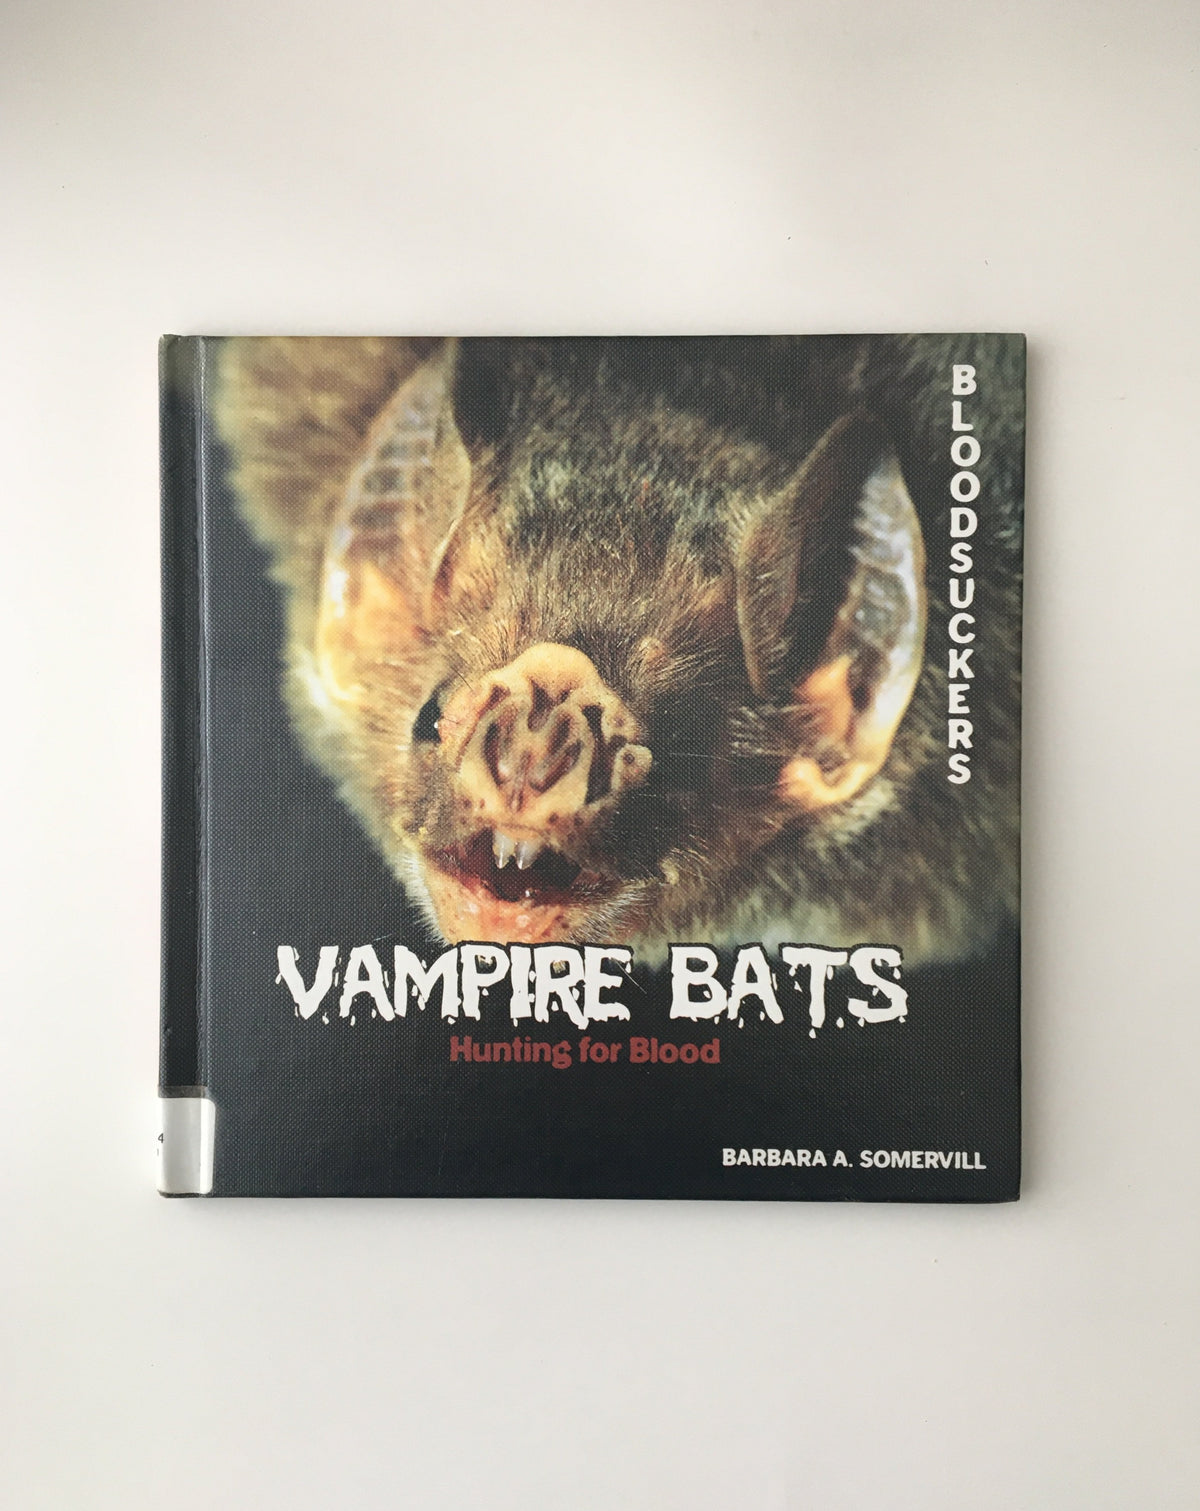 Vampire Bats by Barbara A. Somervill